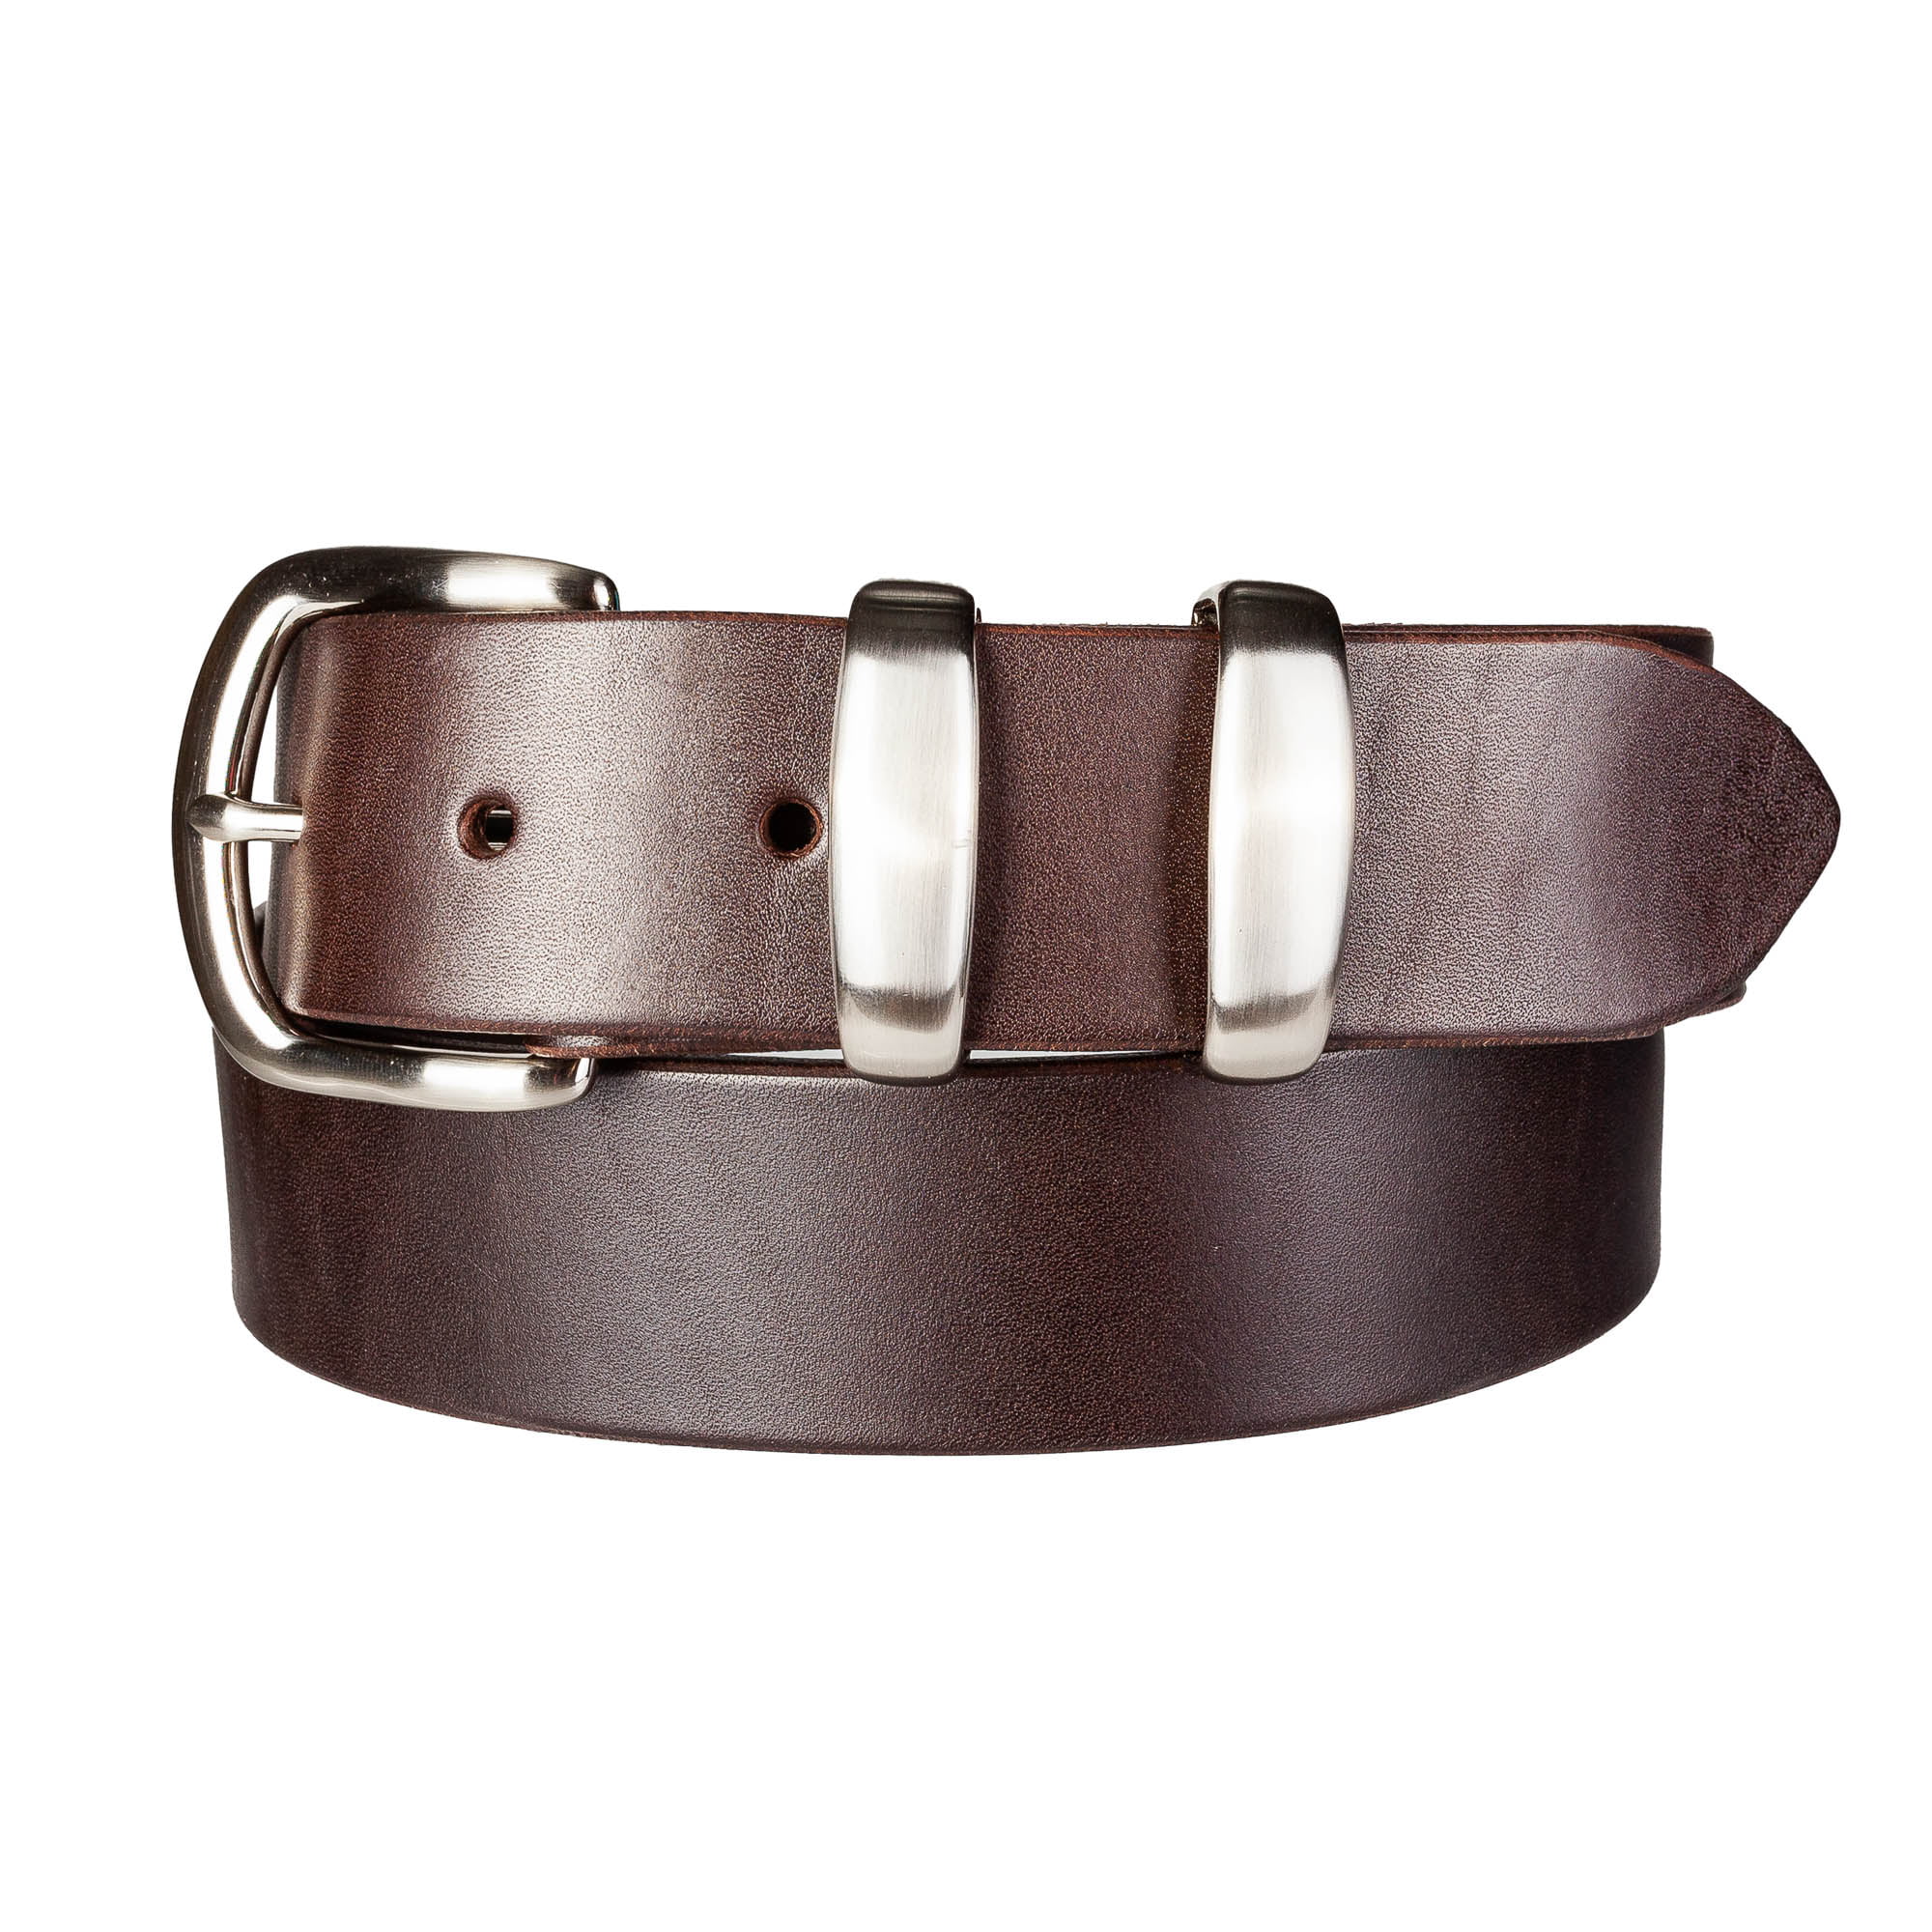 Buy Handmade Leather Belts Online in Australia | Handmade Australian ...